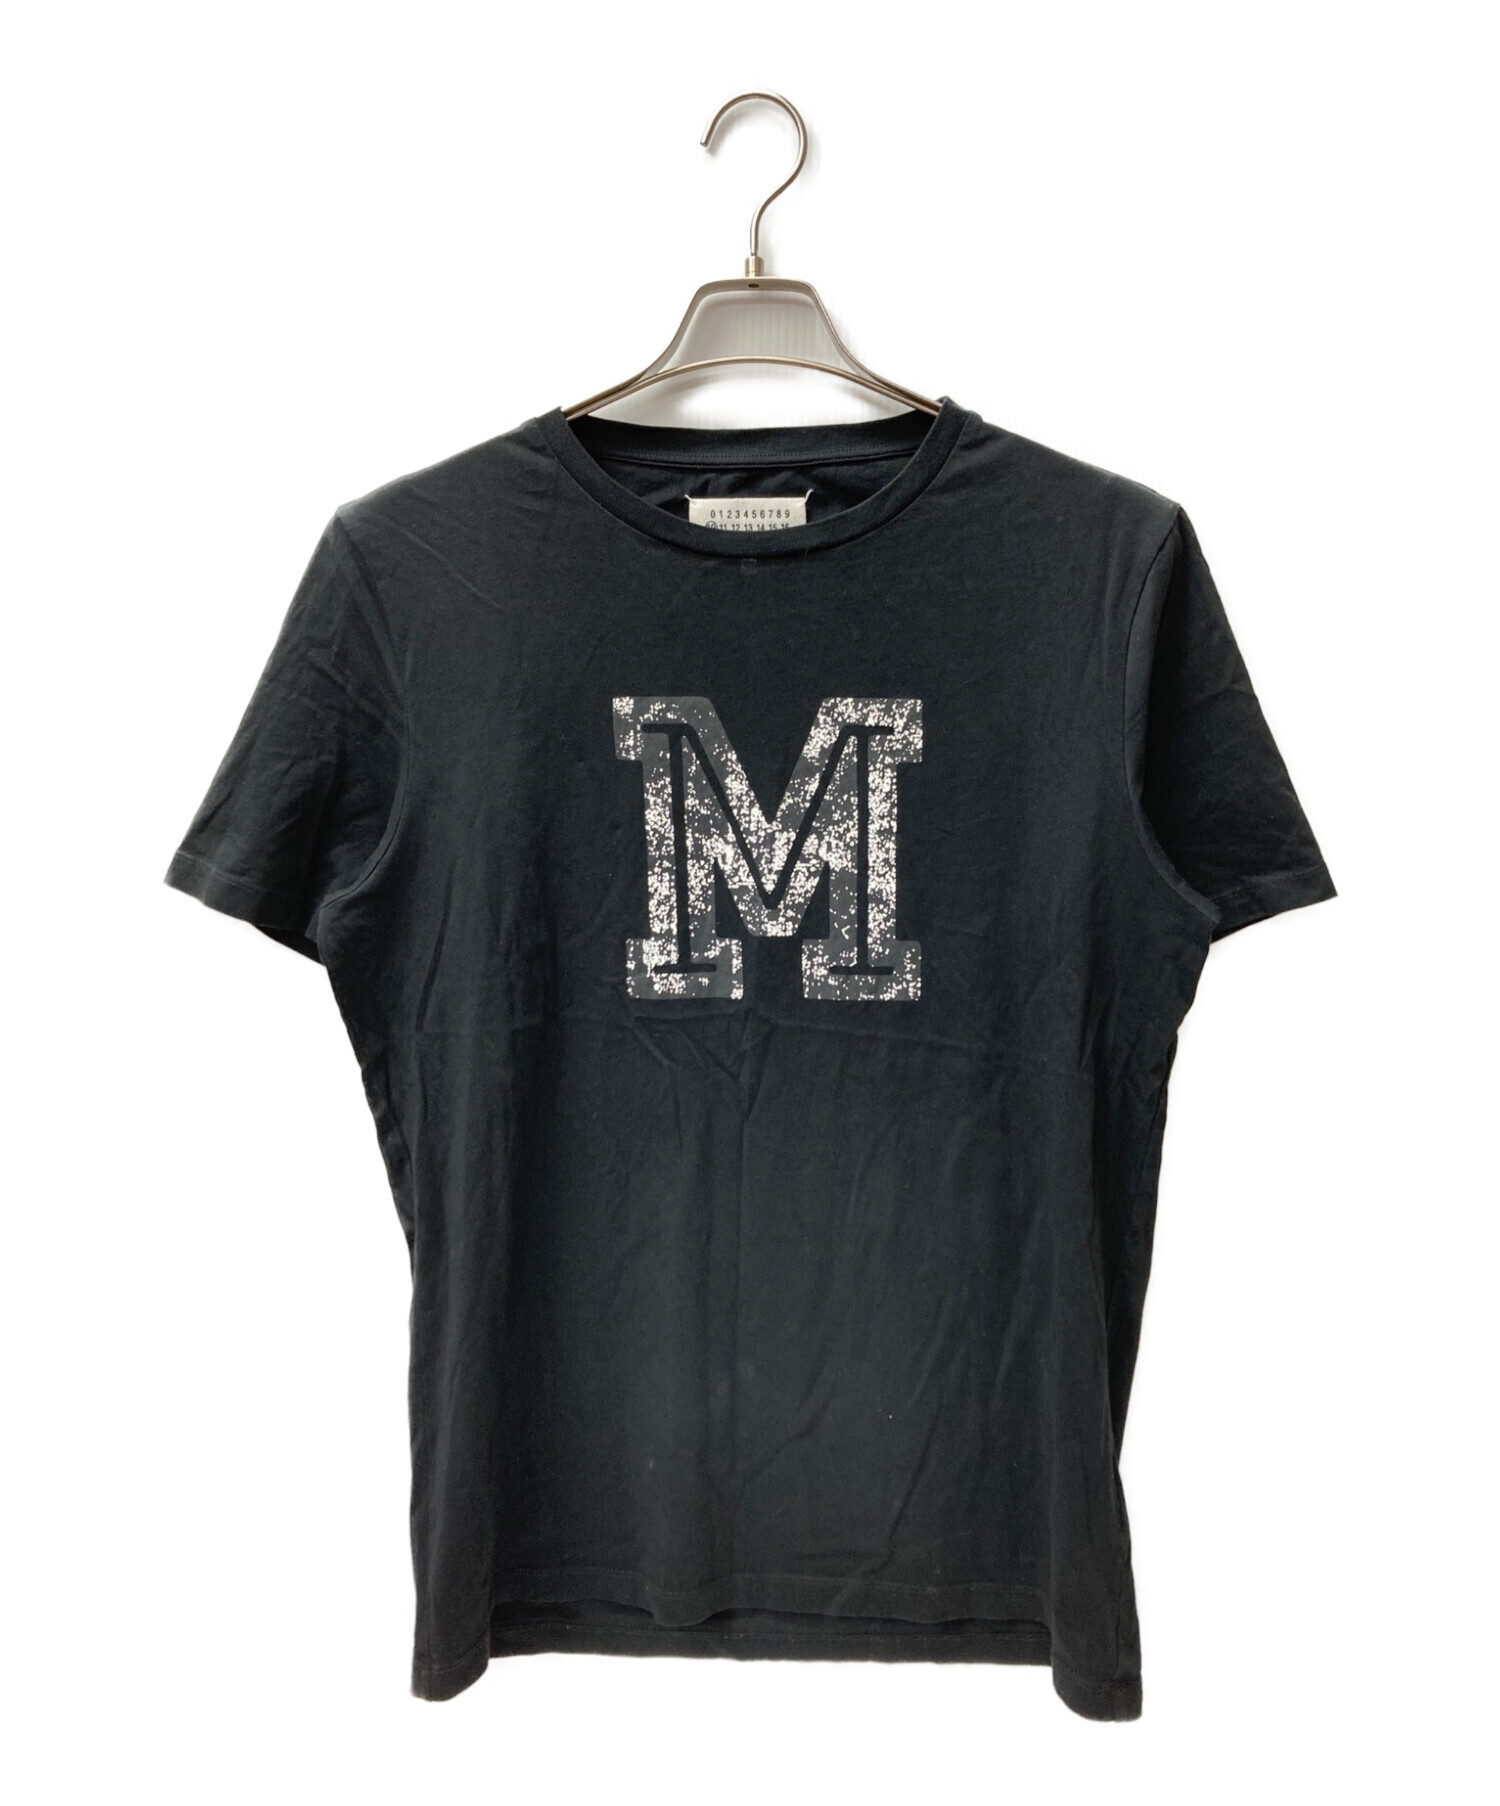 マルジェラ tシャツ メモリー 50サイズ 墨黒